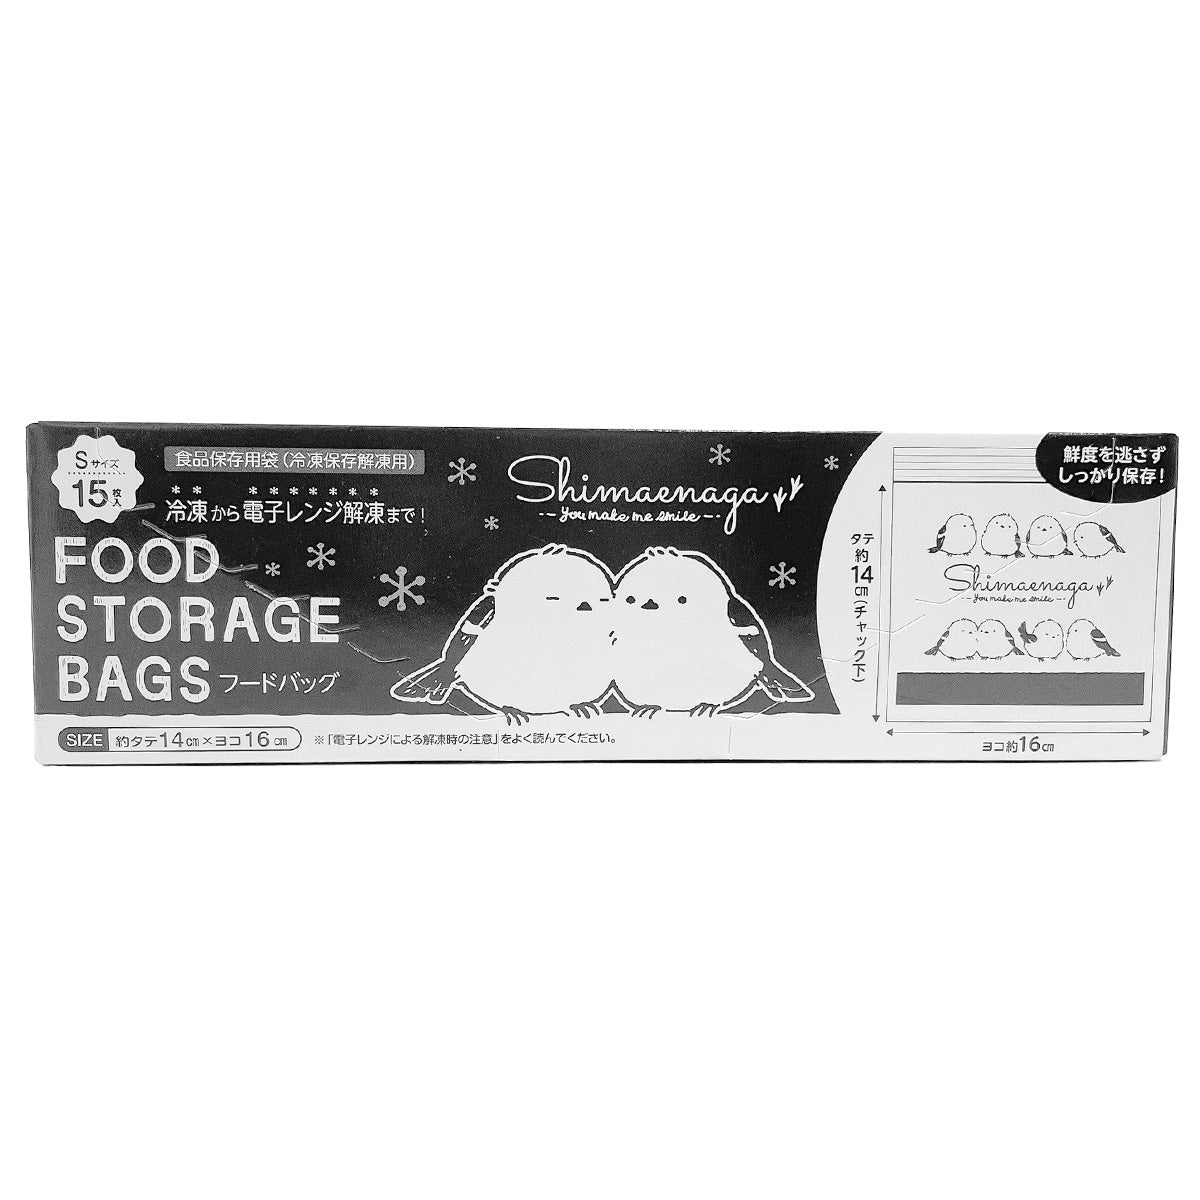 ストックバッグ 食品保存袋 フードバッグ S 15枚入 シマエナガ 0808/345724